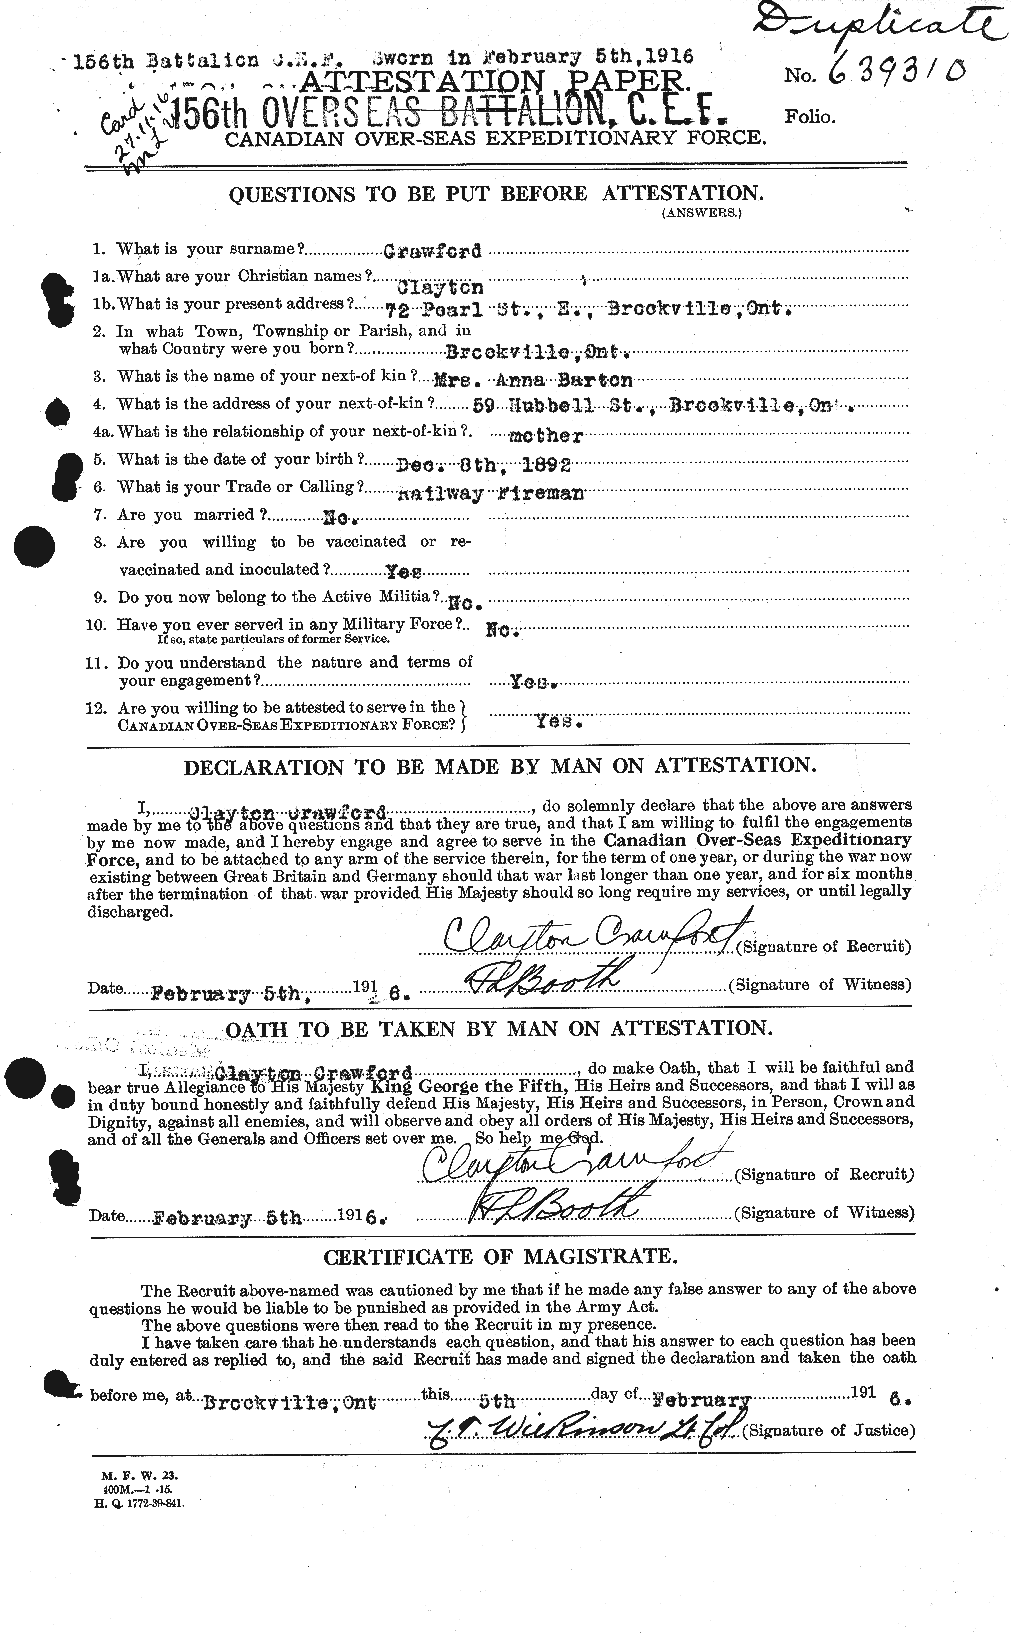 Dossiers du Personnel de la Première Guerre mondiale - CEC 060831a